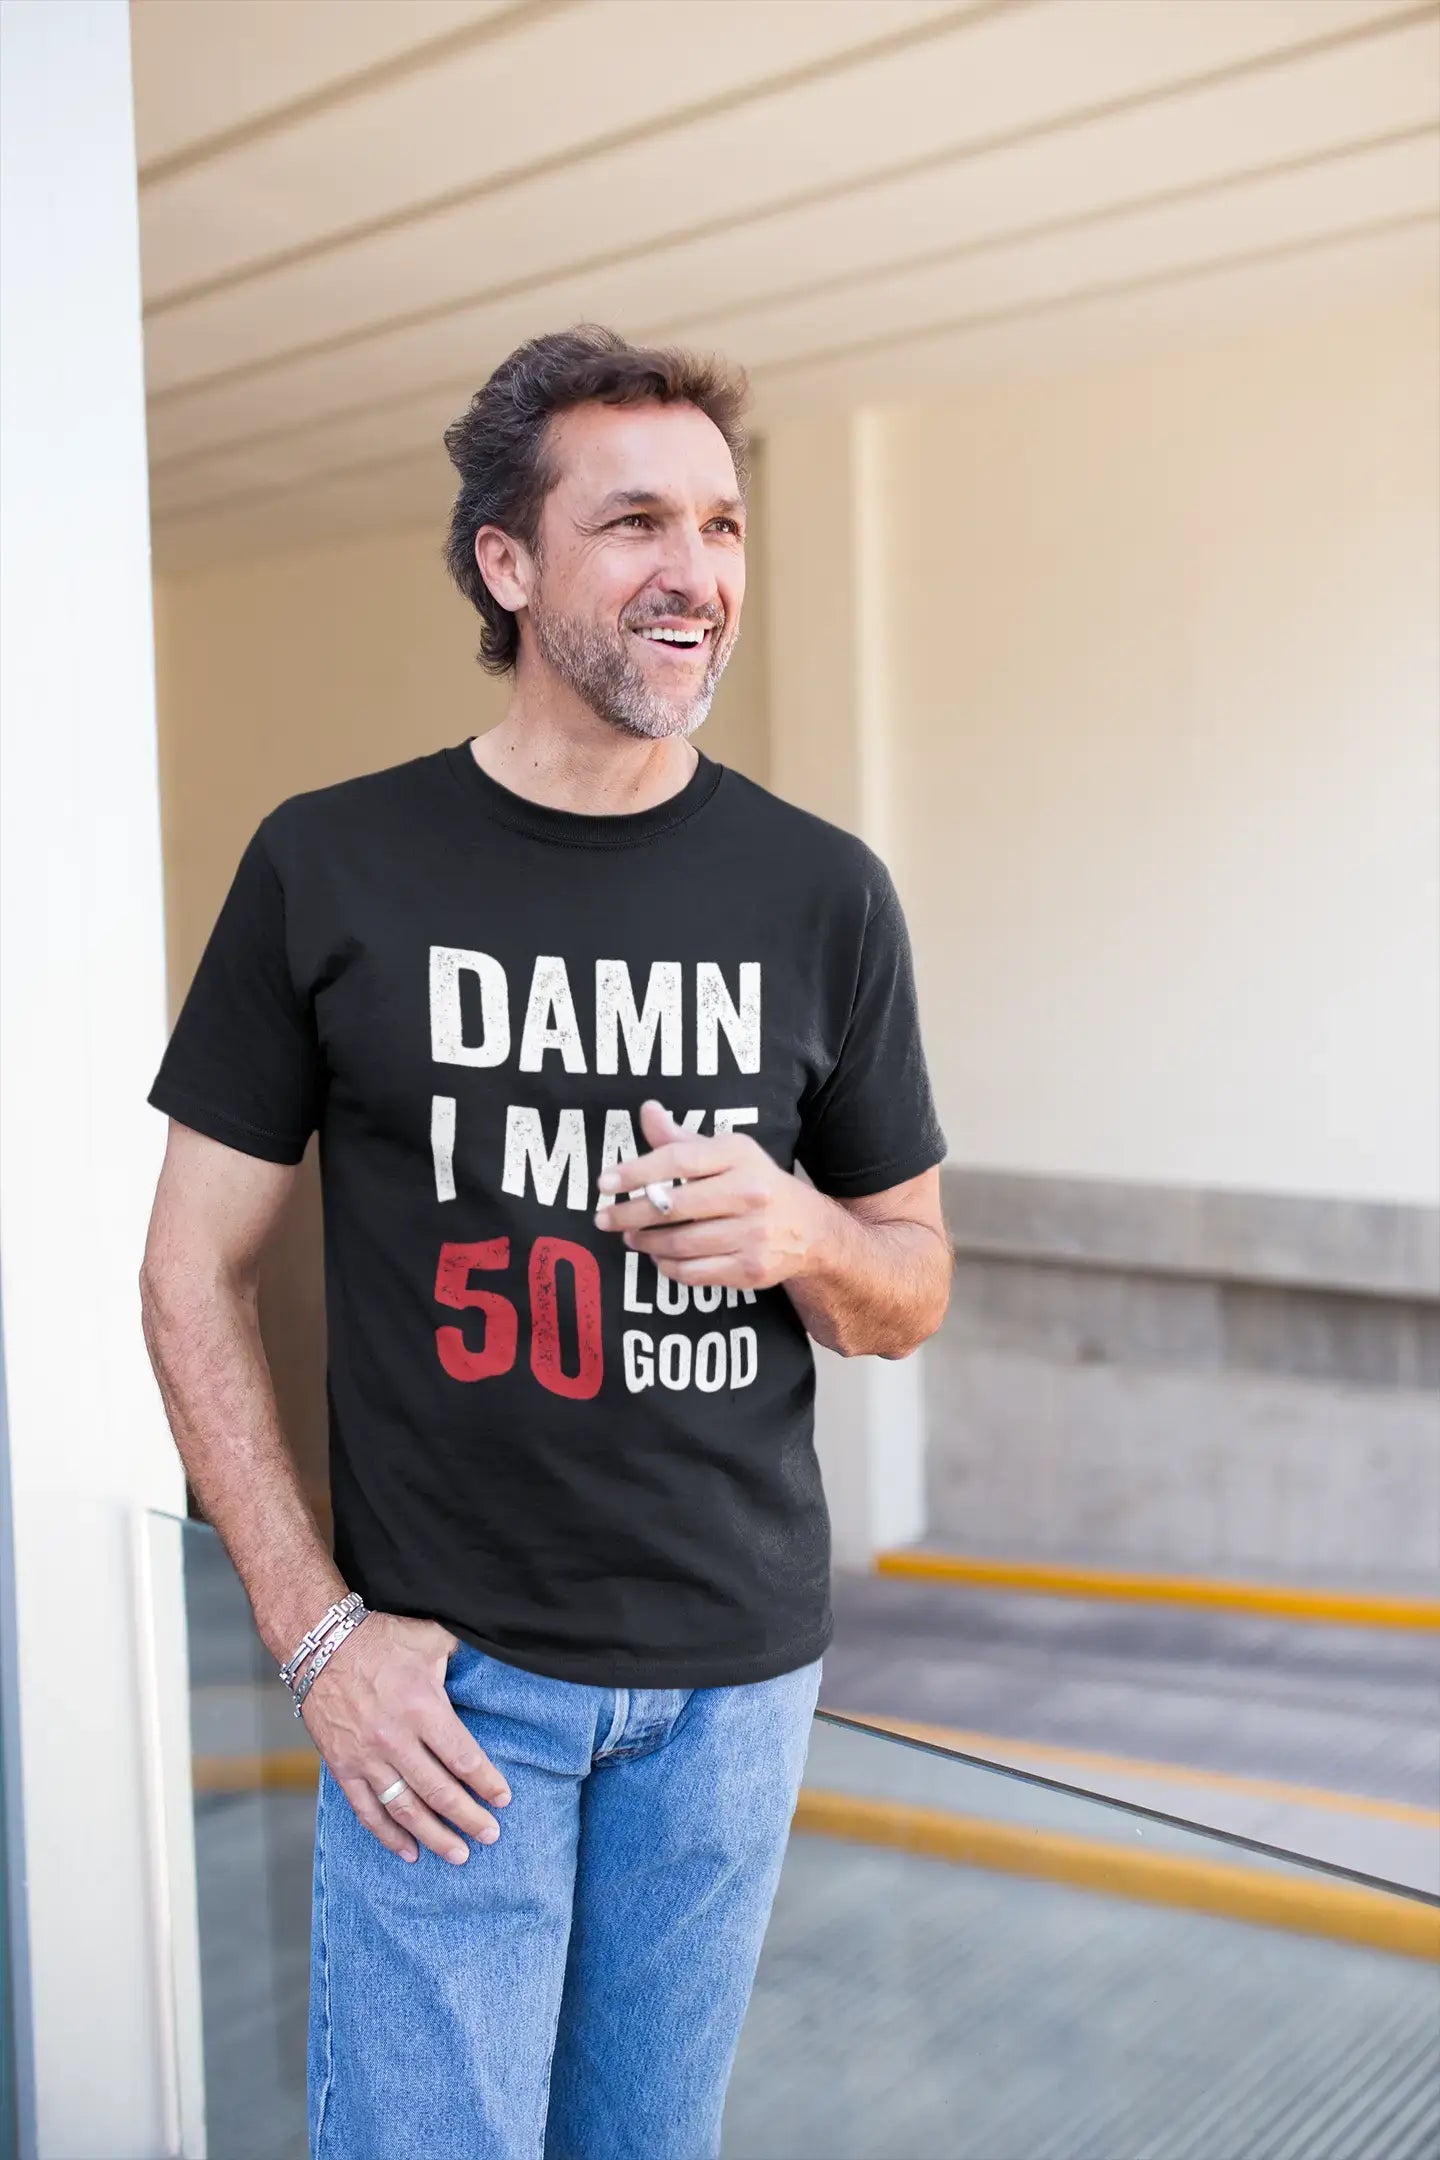 Damn I Make 50 Look Good Men's T-shirt Black 50 Birthday Gift 00410